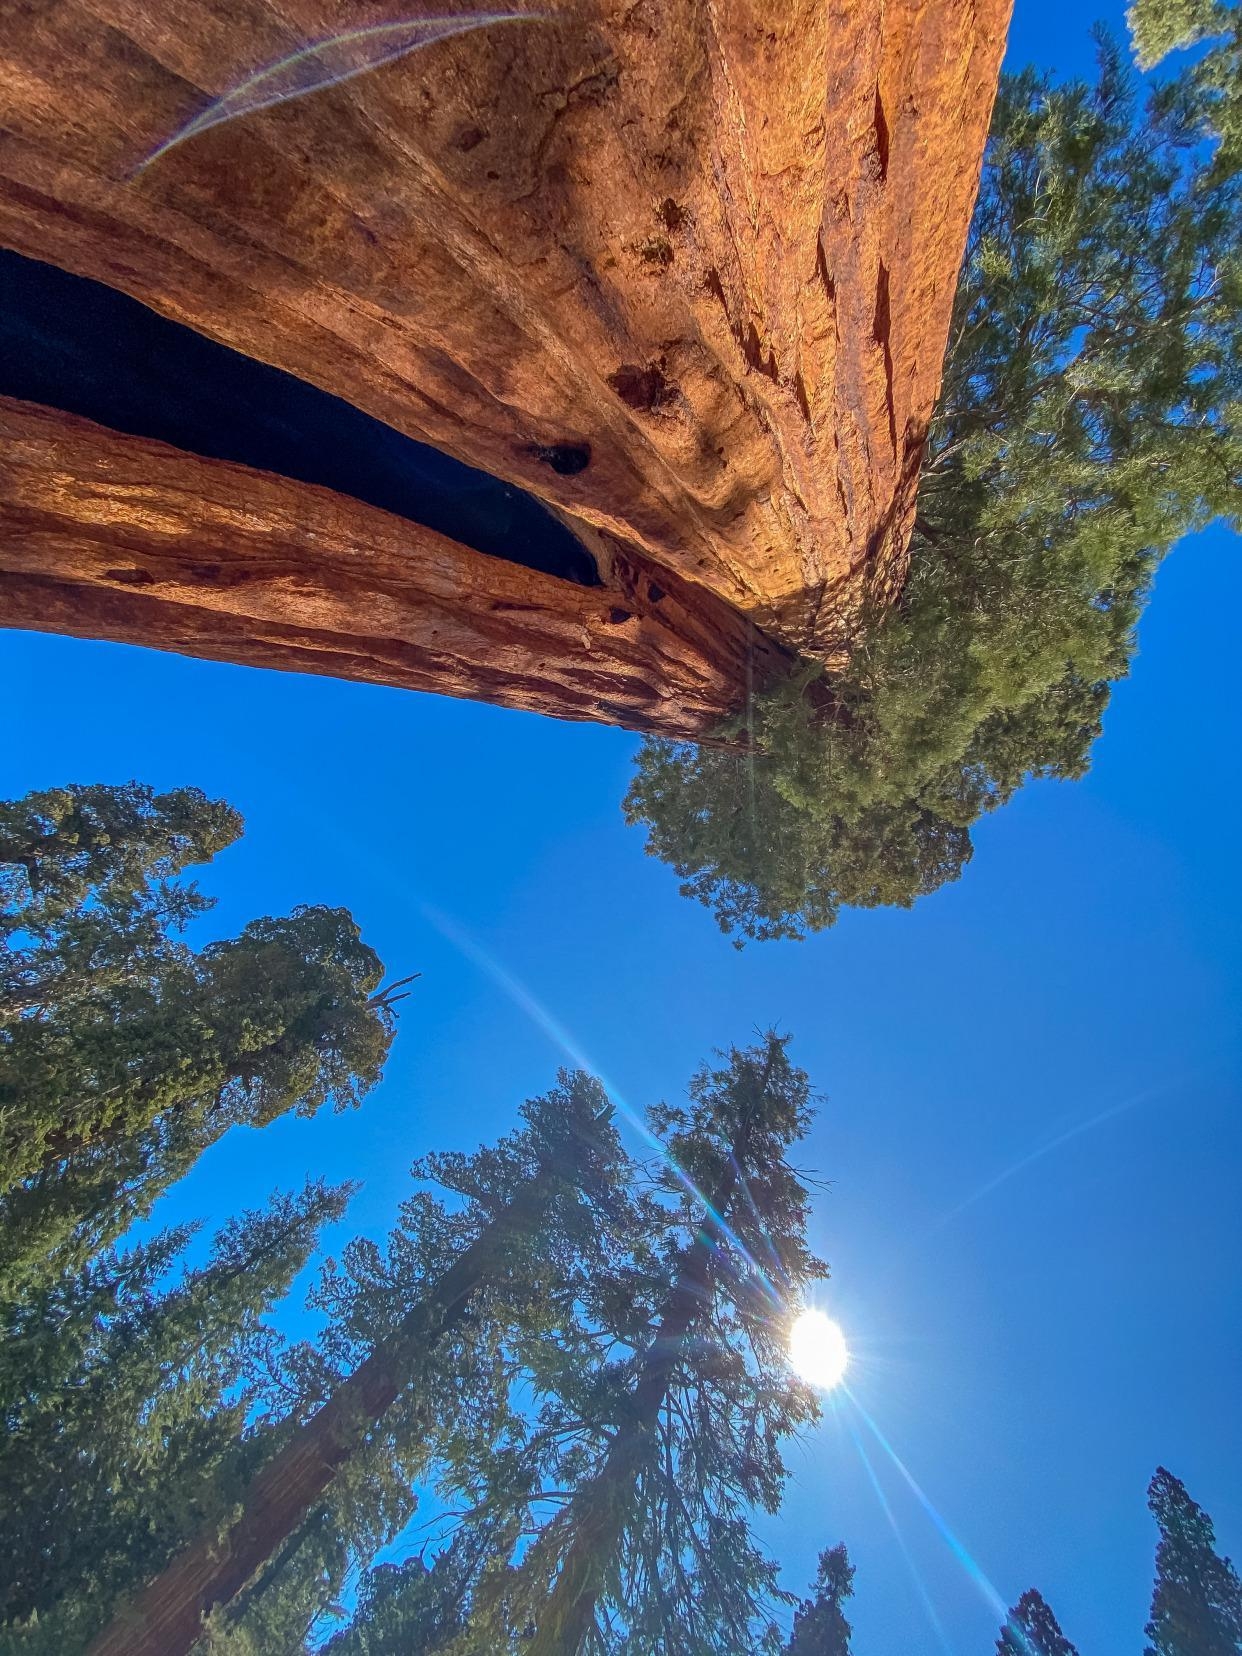 谢尔曼将军树作为世界上最巨大的红杉几十个人手拉手才可以抱起来